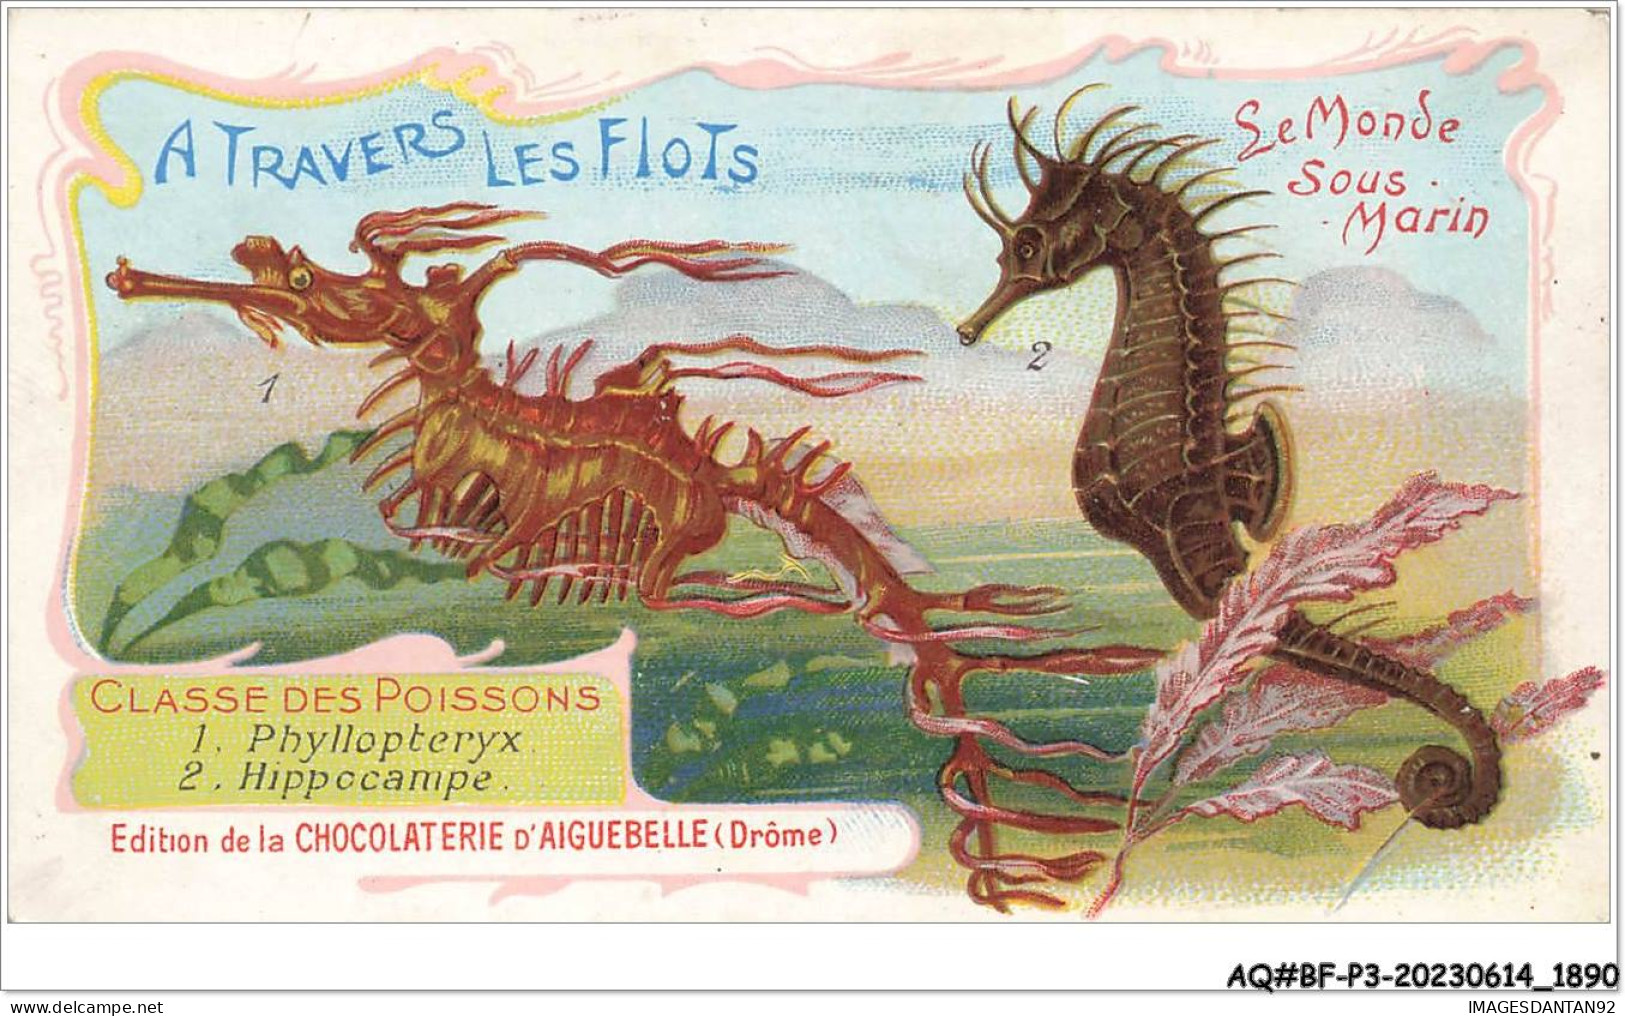 AQ#BFP3-CHROMOS-0943 - CHOCOLAT D'AIGUEBELLE - Le Monde Sous Marin - Classe Des Poissons - Aiguebelle